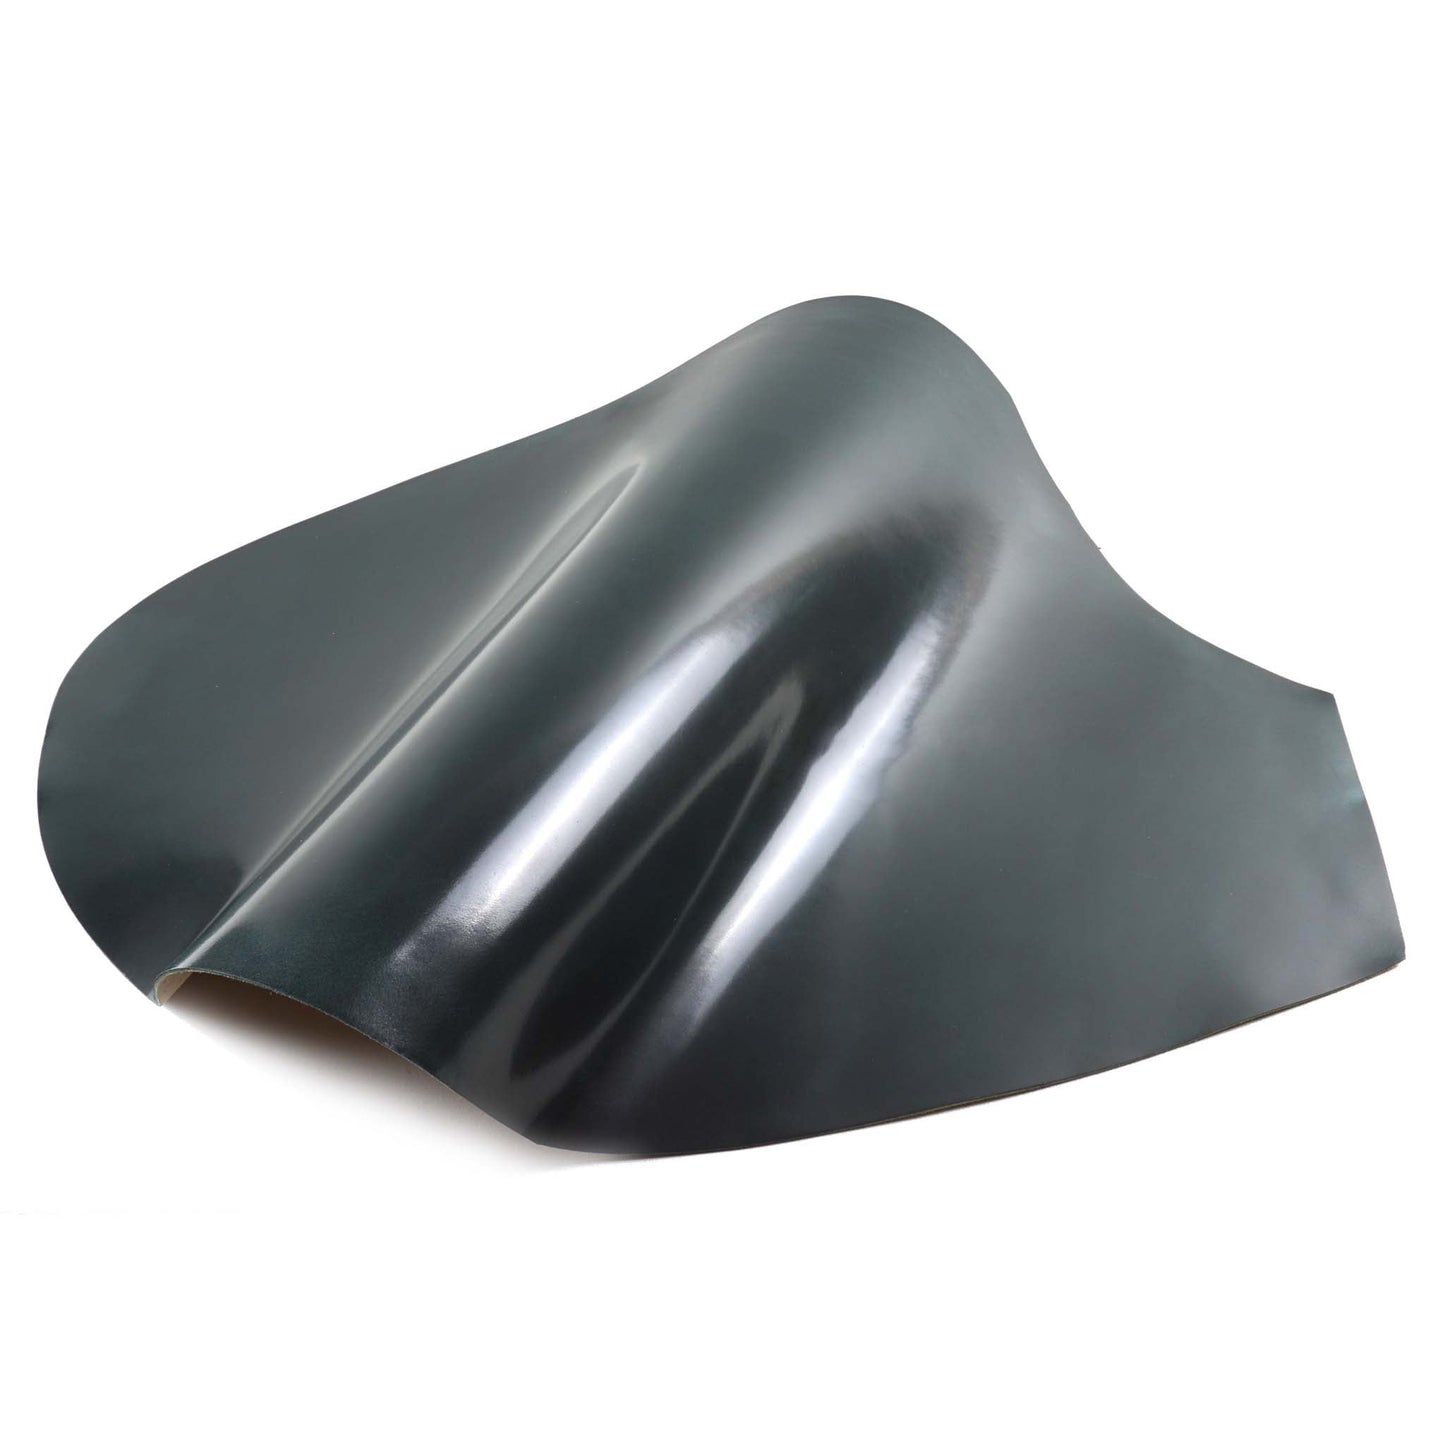 Rocado shell cordovan Classic finish color Petrolio top